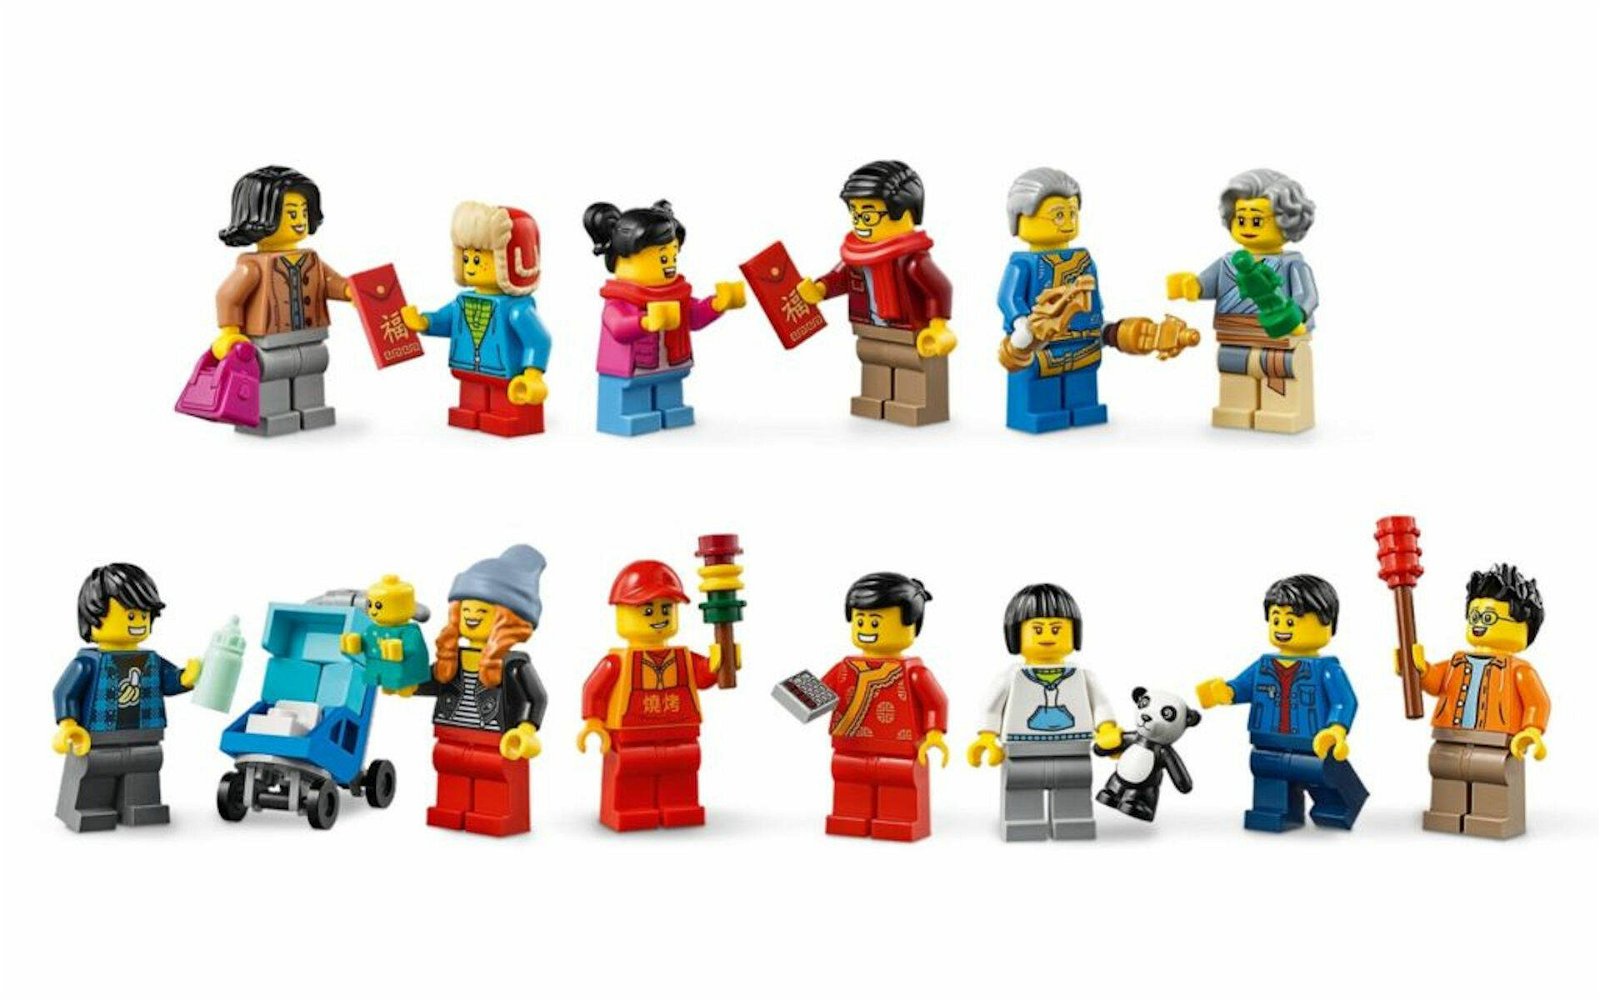 Immagine di I migliori set LEGO nell'ottica dell'inclusione sociale